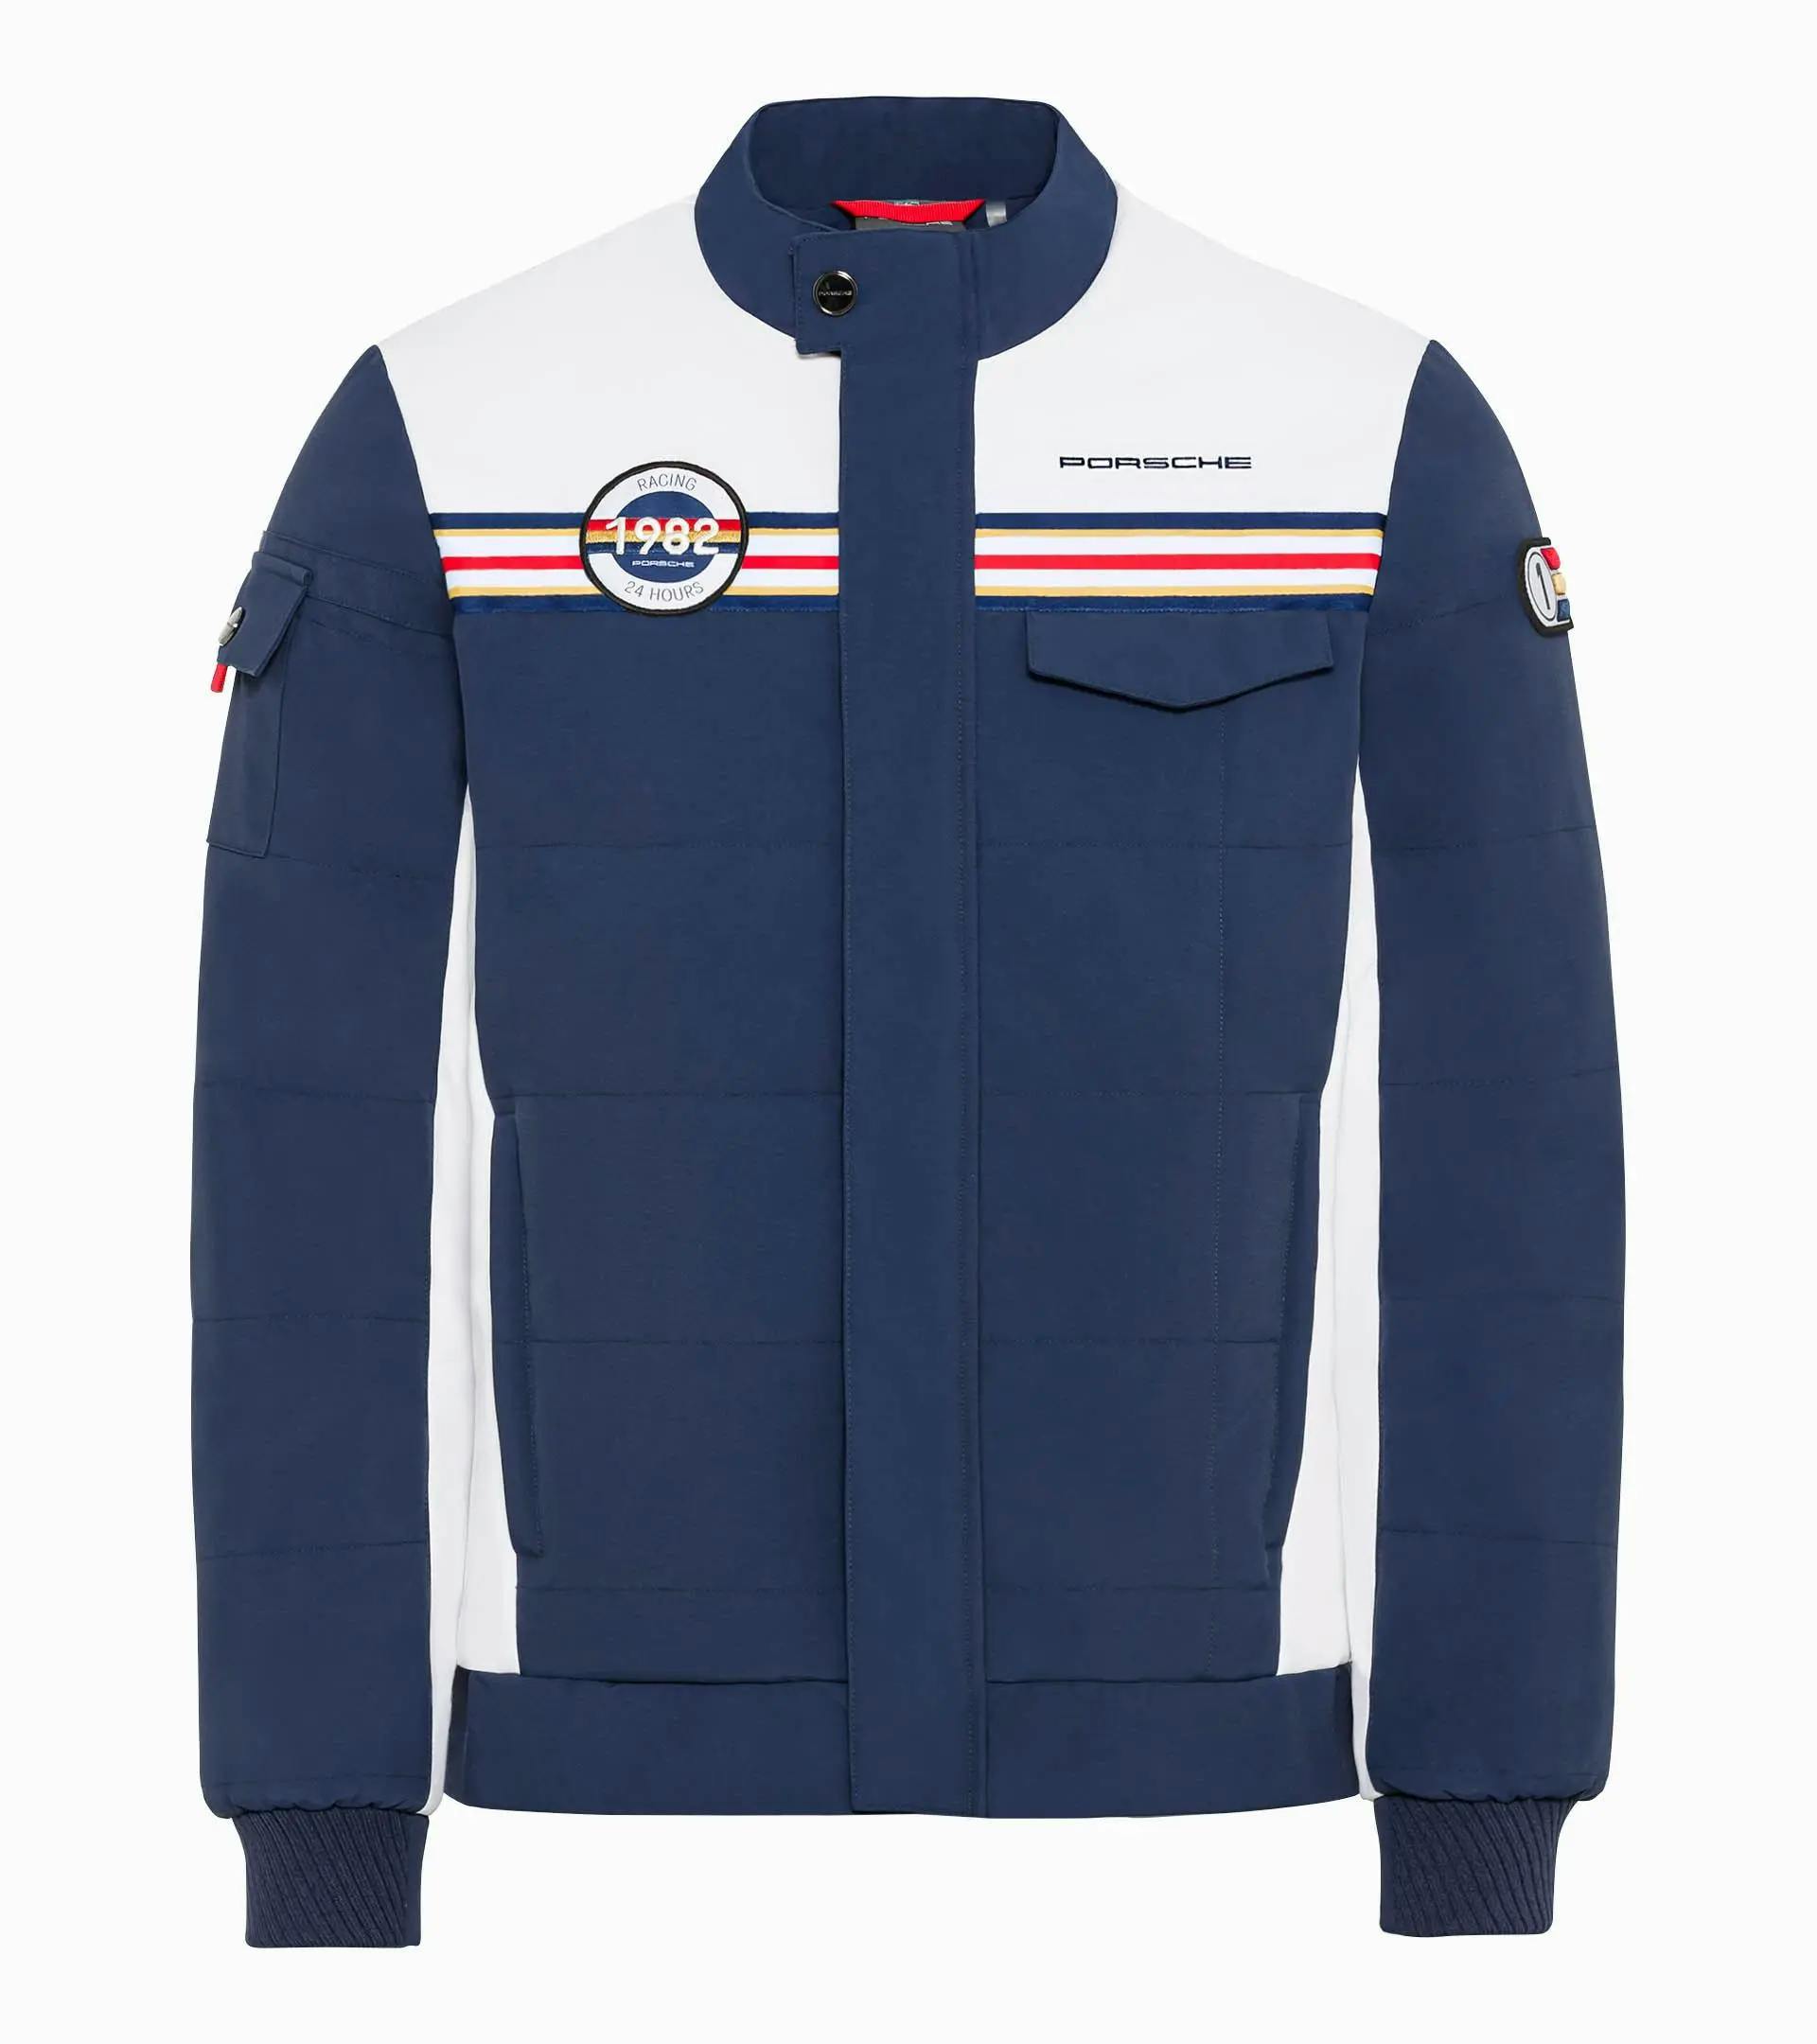 Men's jacket – Racing 1